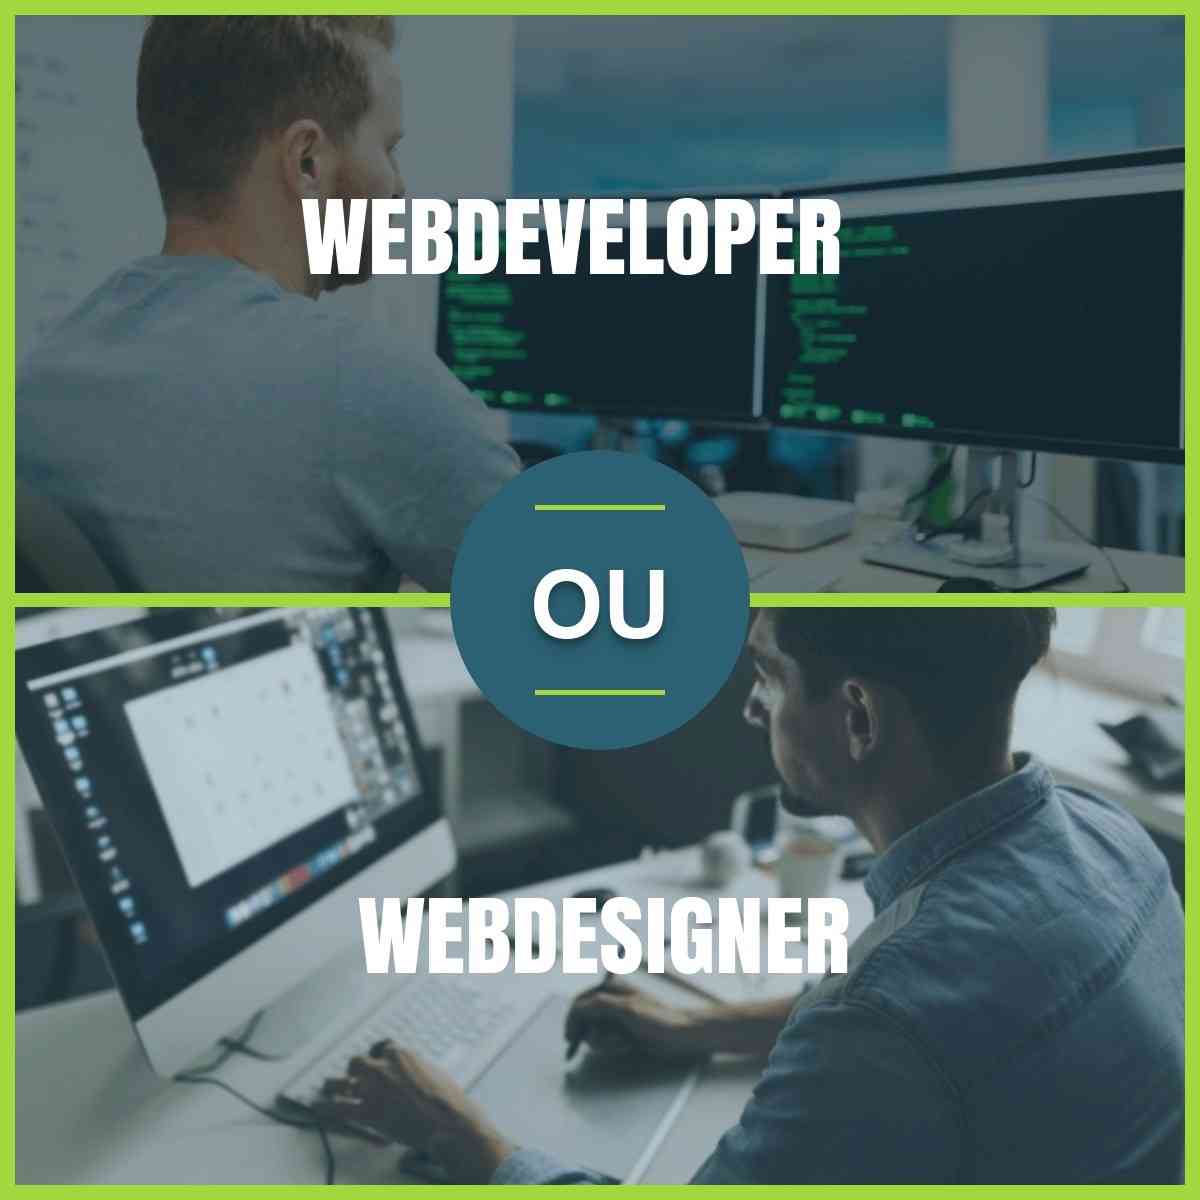 WEBDESIGNER VS WEBDEVELOPER